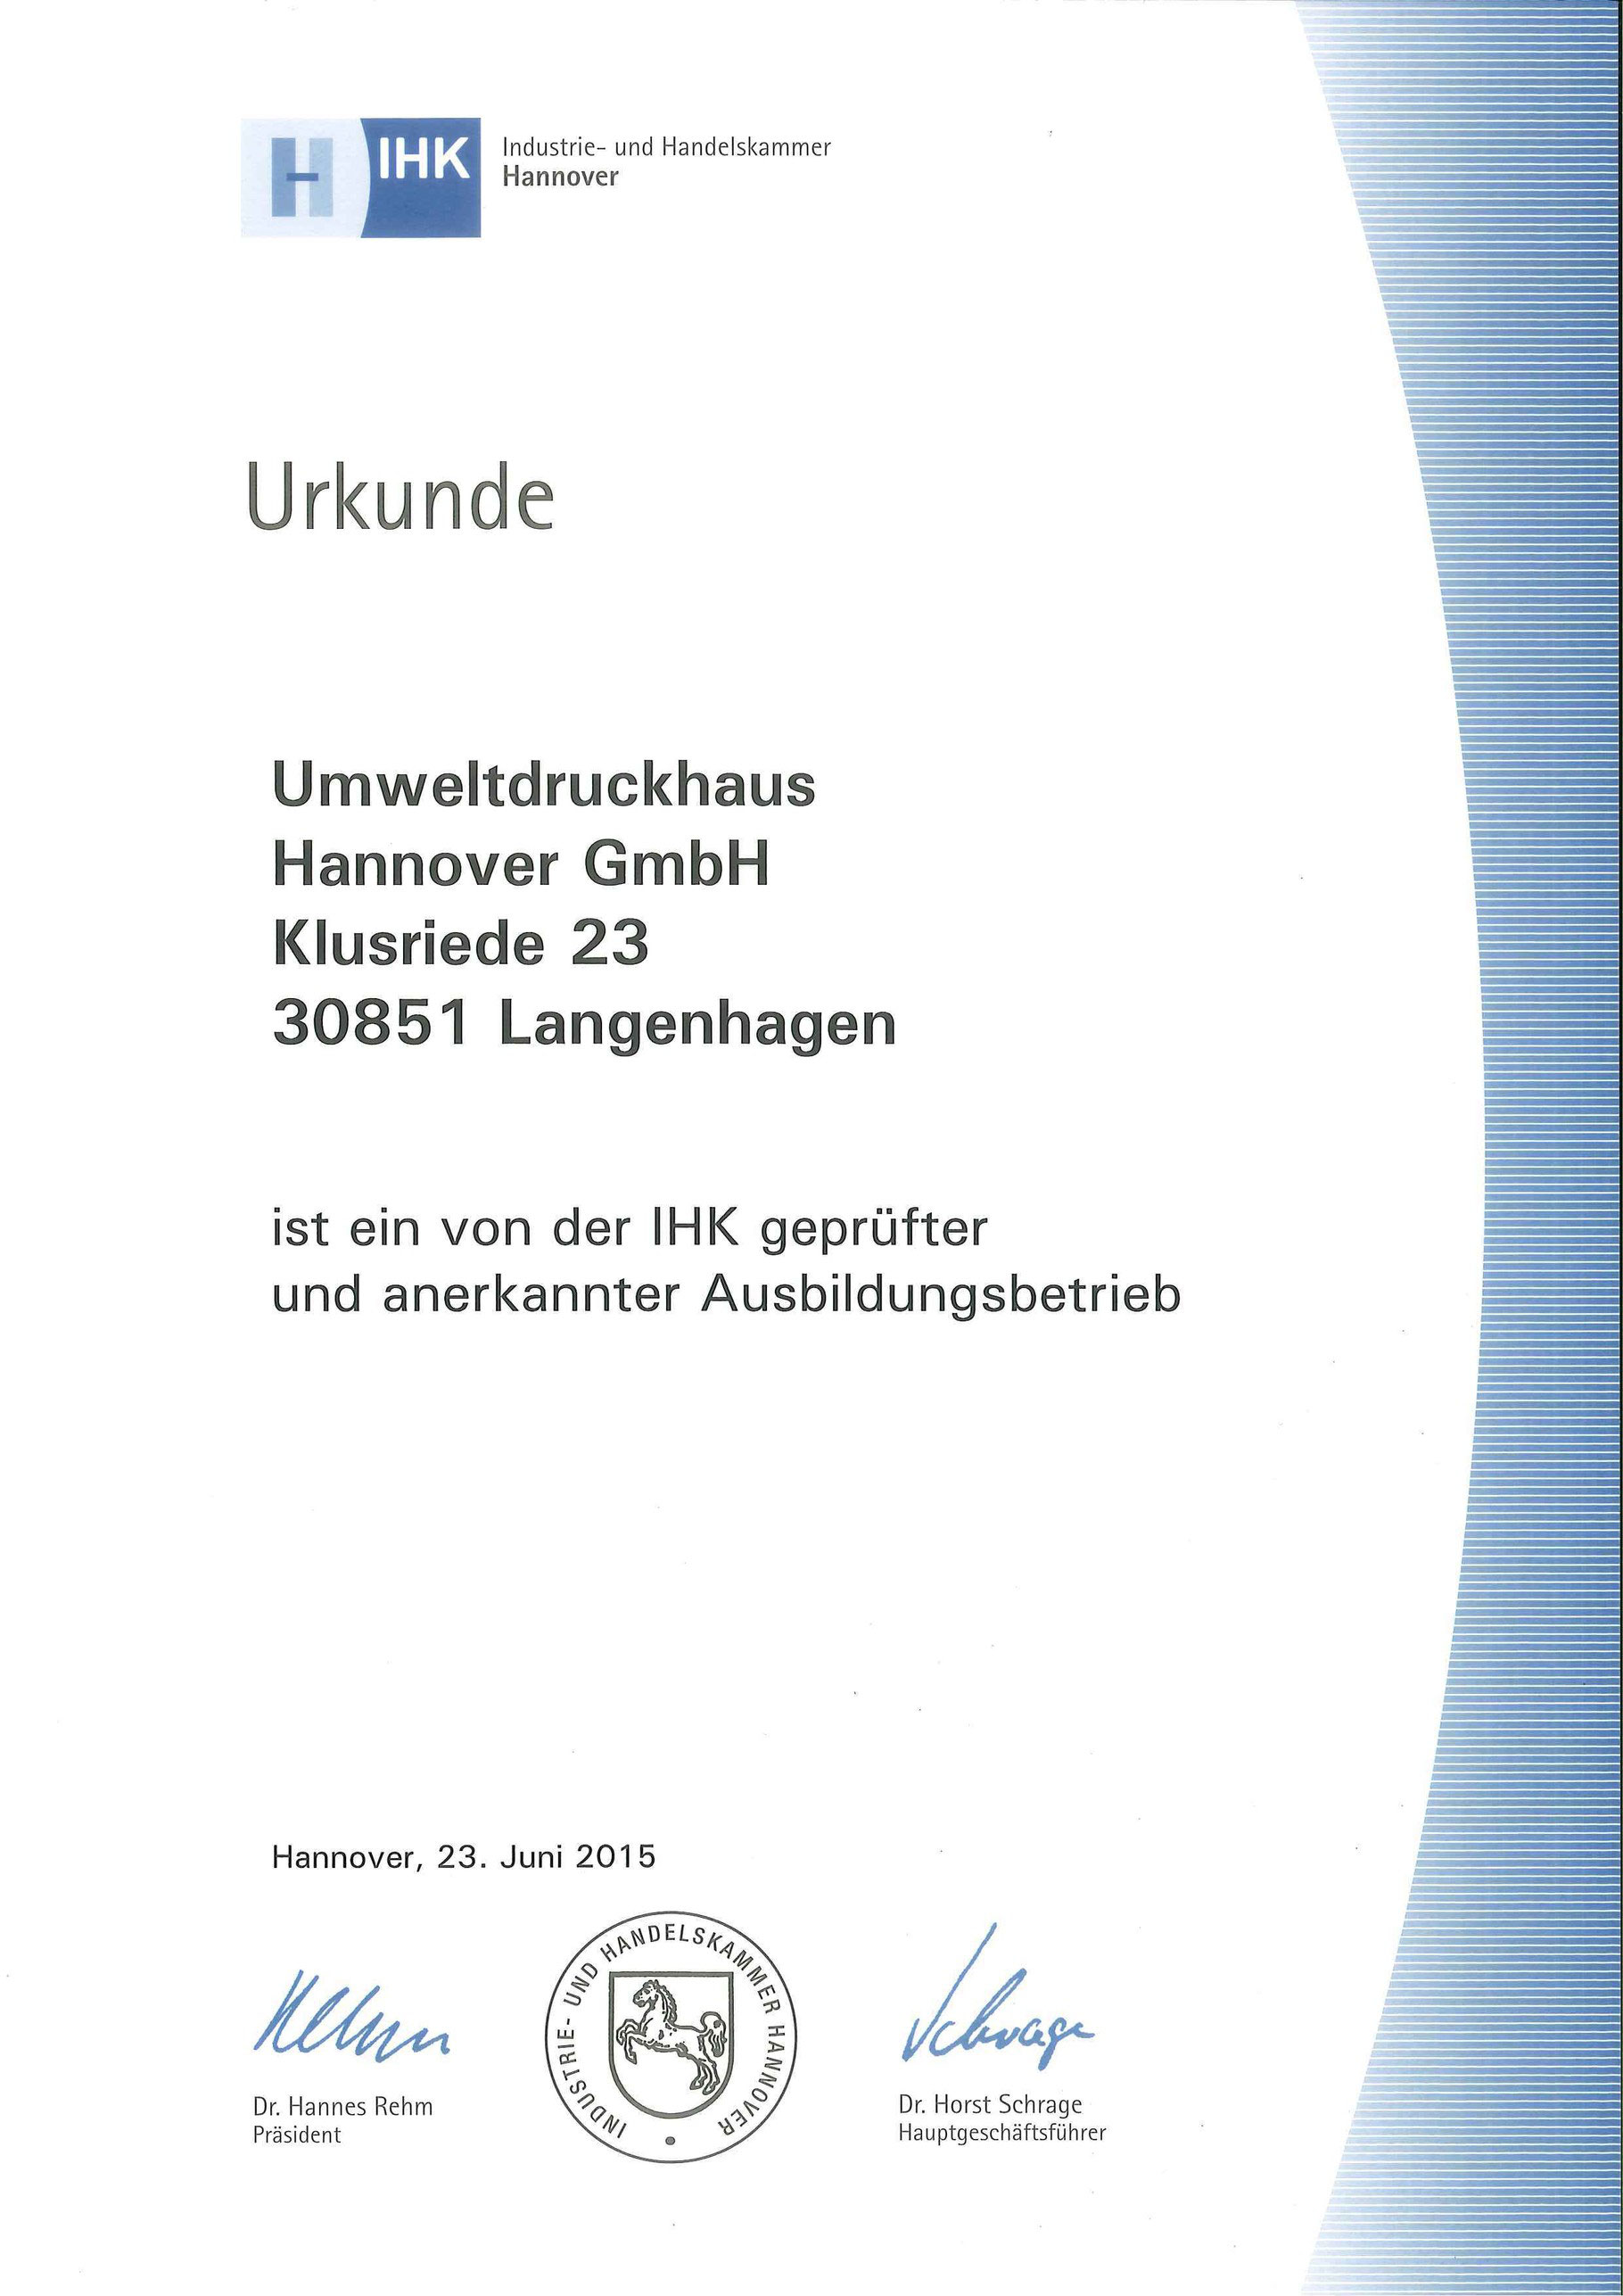 IHK-Urkunde-Ausbildungsbetrieb UmweltDruckhaus Hannover